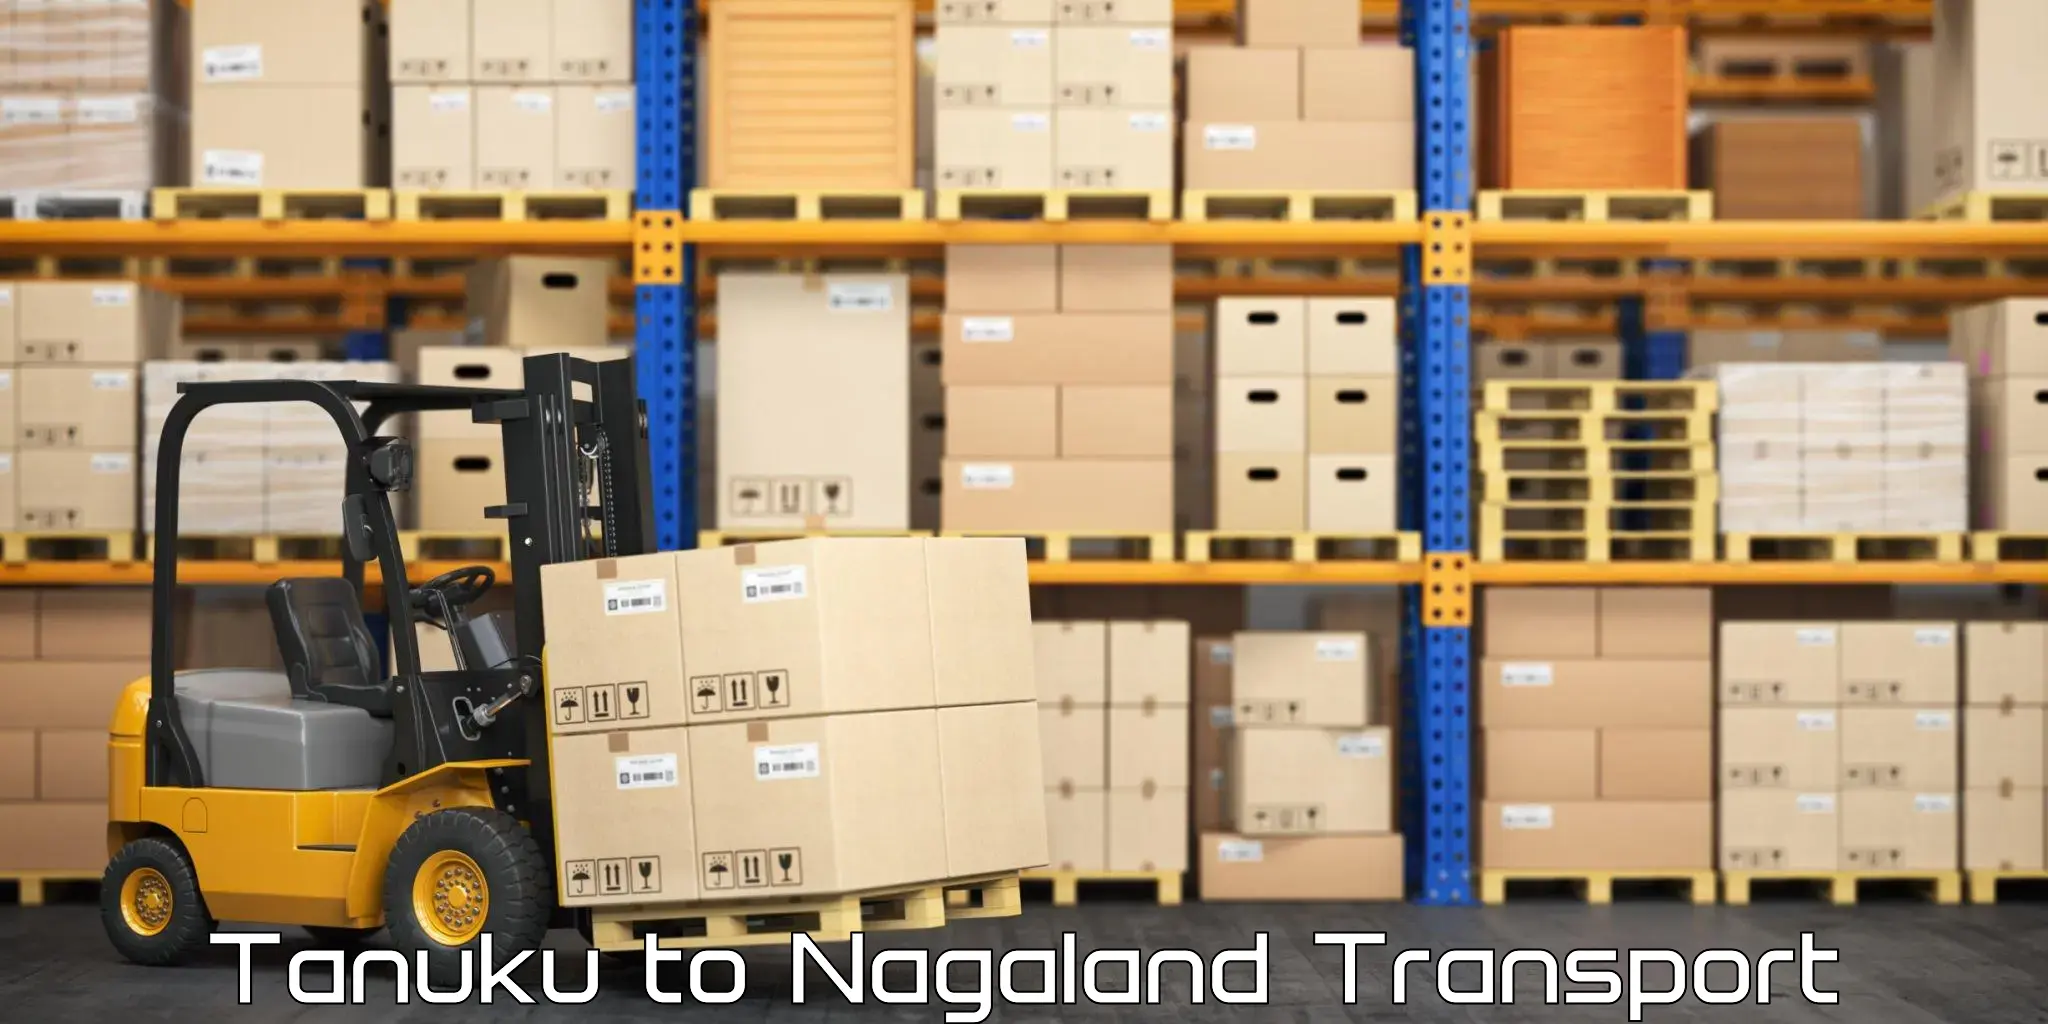 India truck logistics services Tanuku to Nagaland